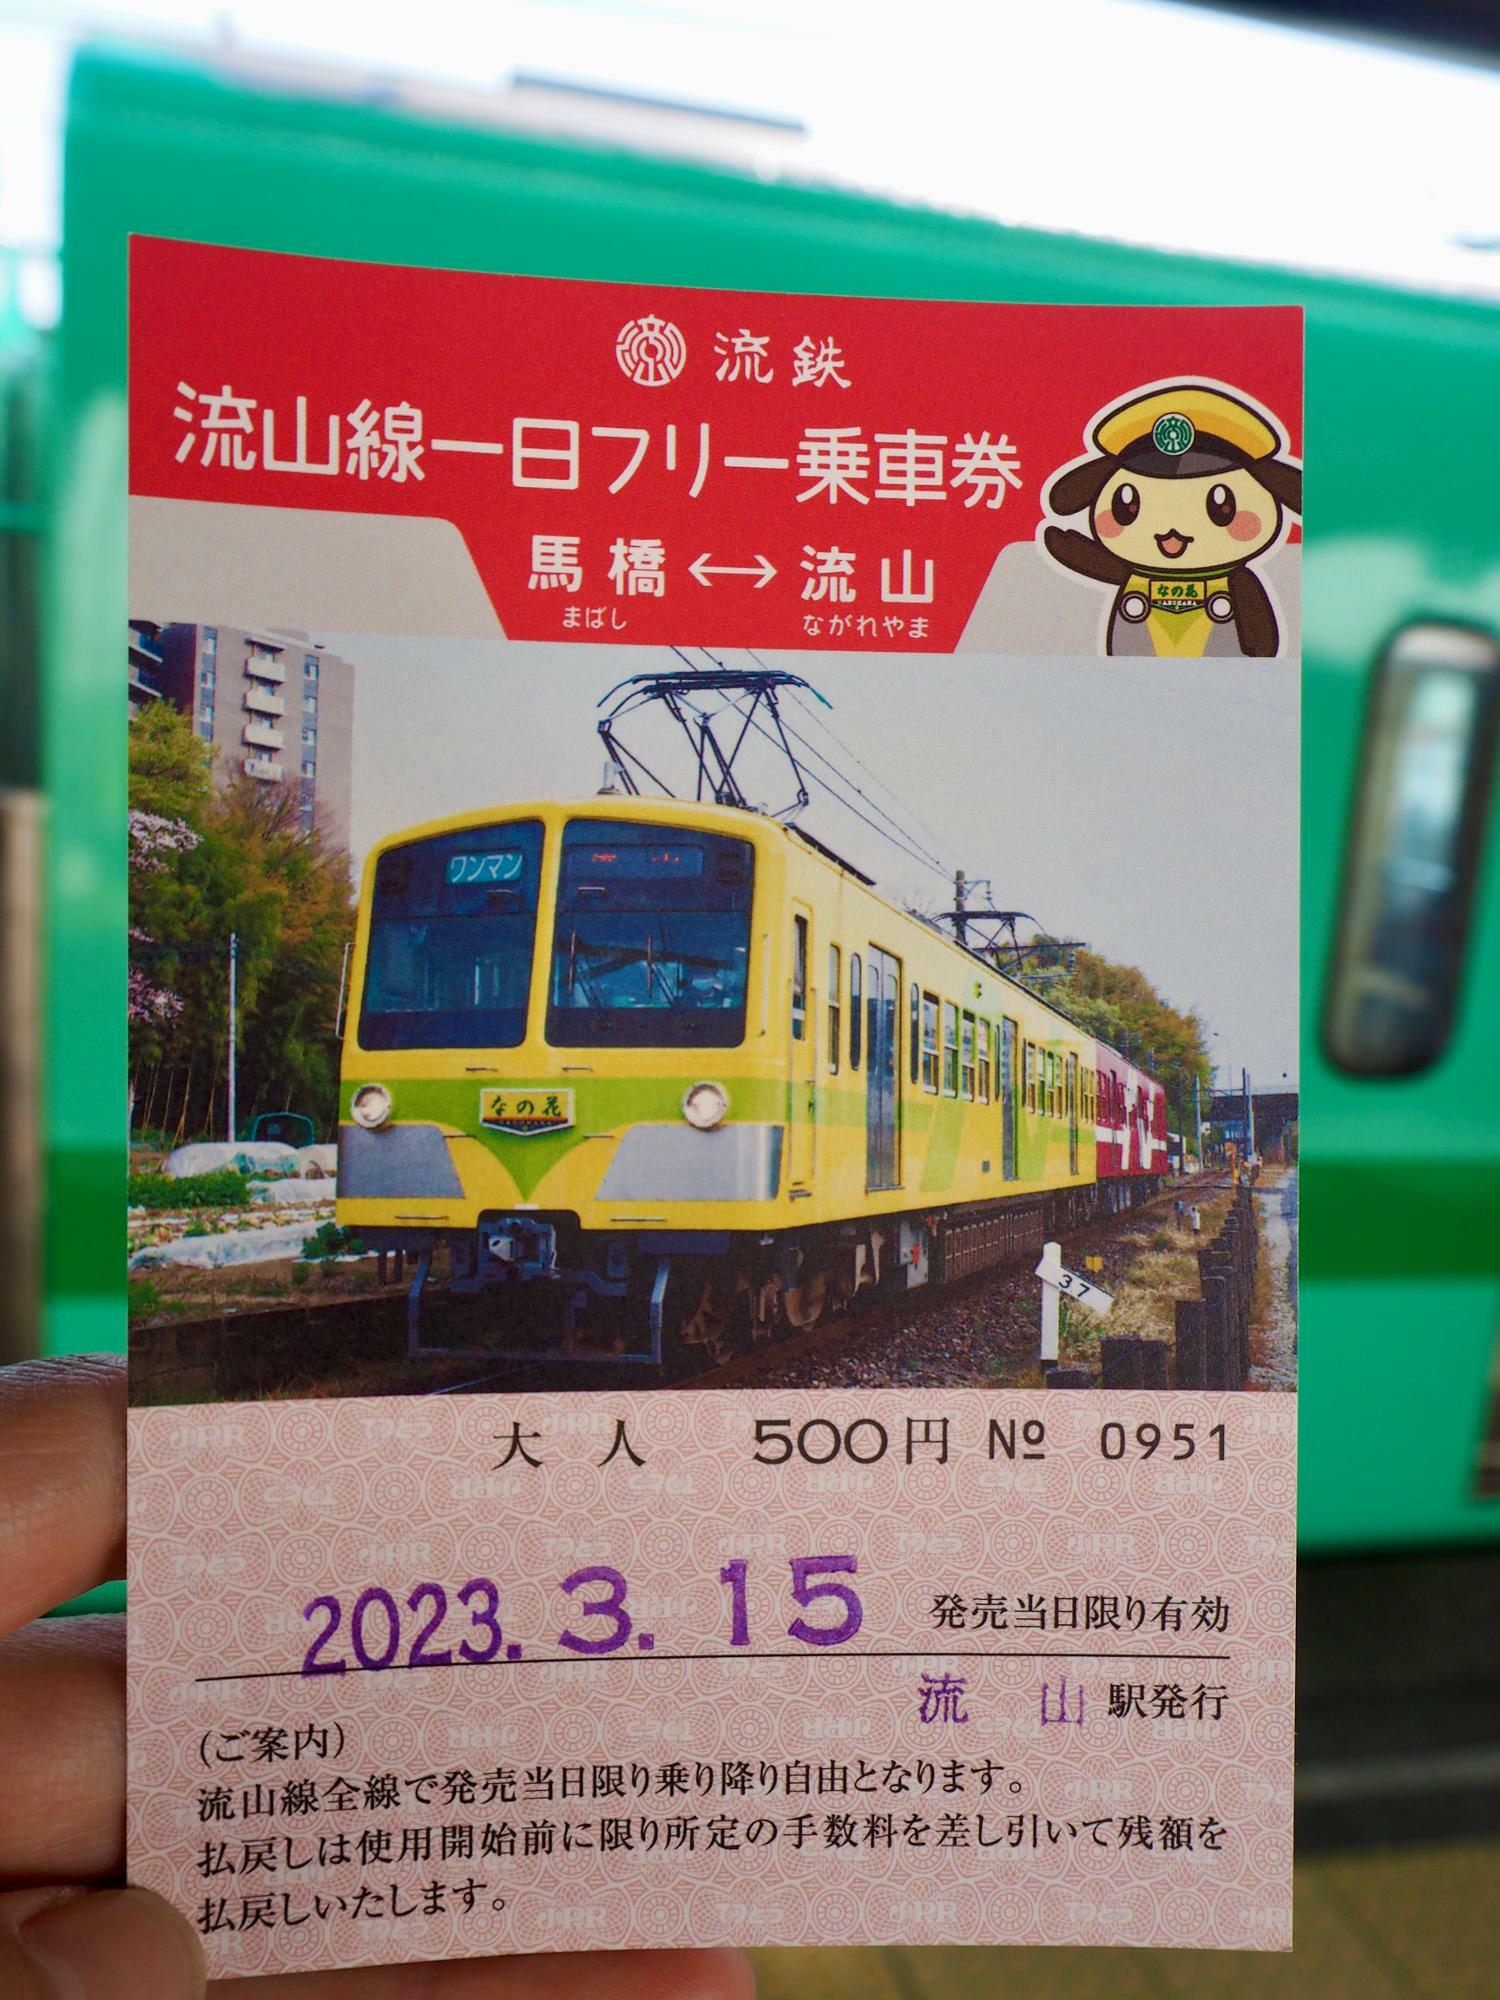 一日フリーパス。小児は250円。電車モチーフのデザインで記念にもなりますね。